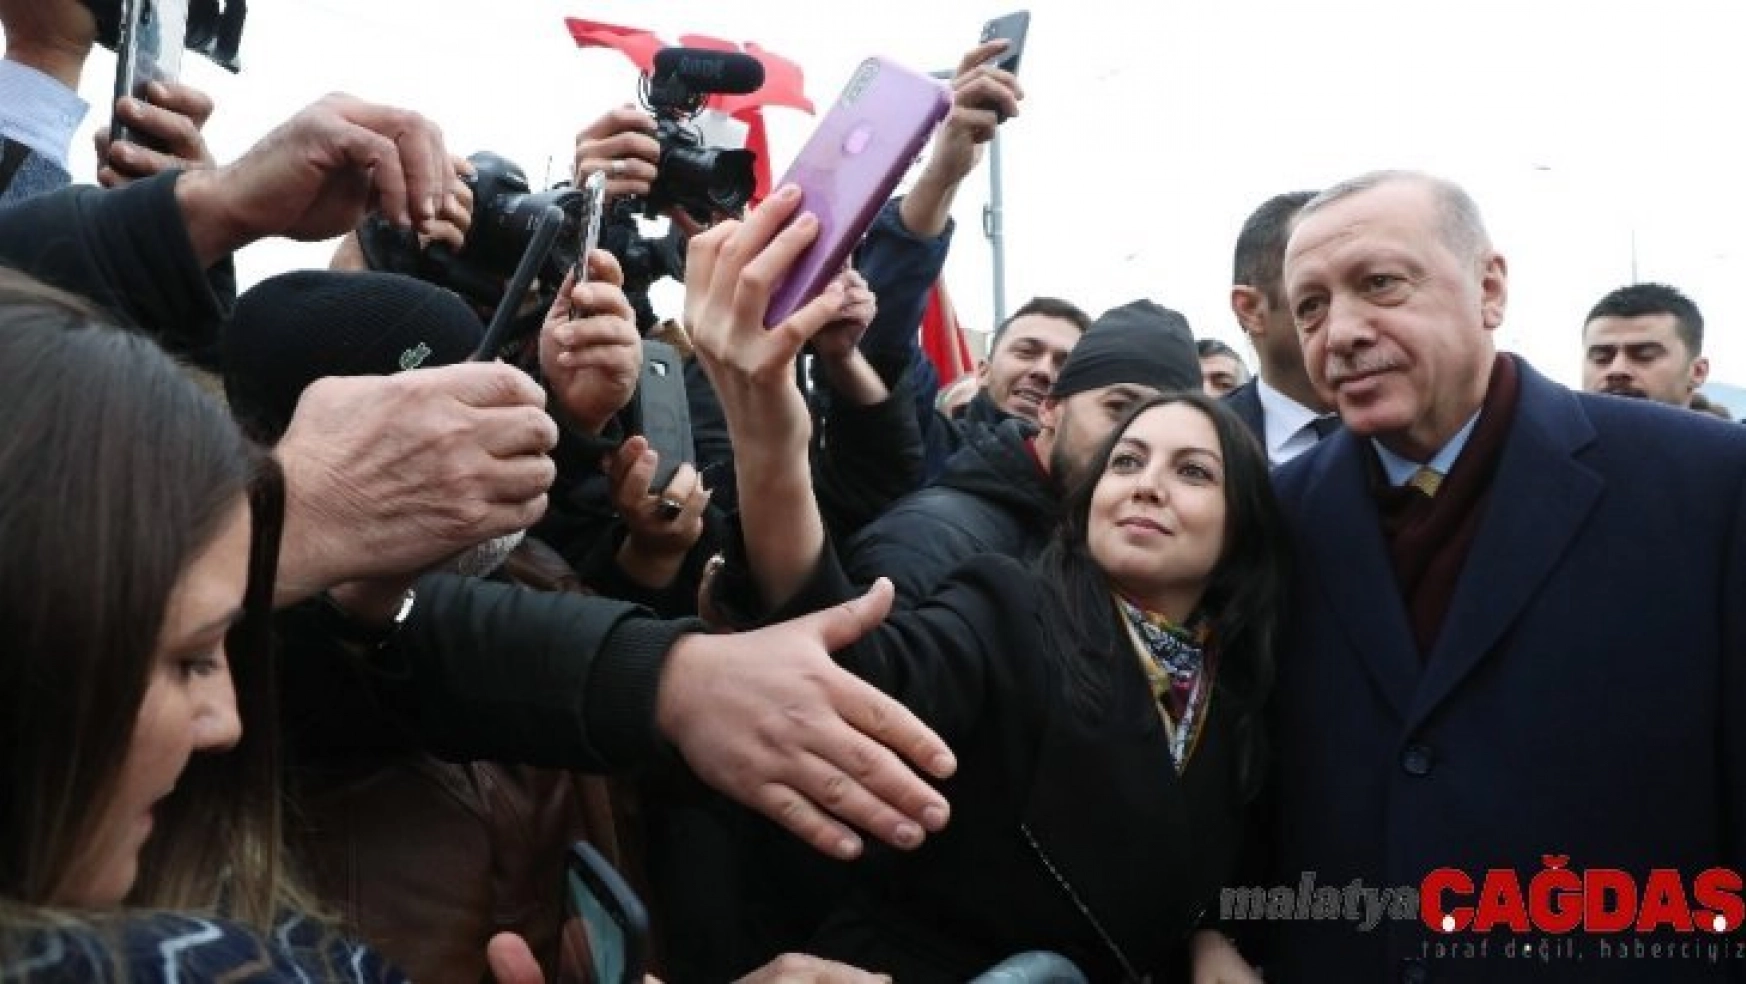 İsviçre'deki Türk vatandaşlarından Erdoğan'a coşkulu karşılama